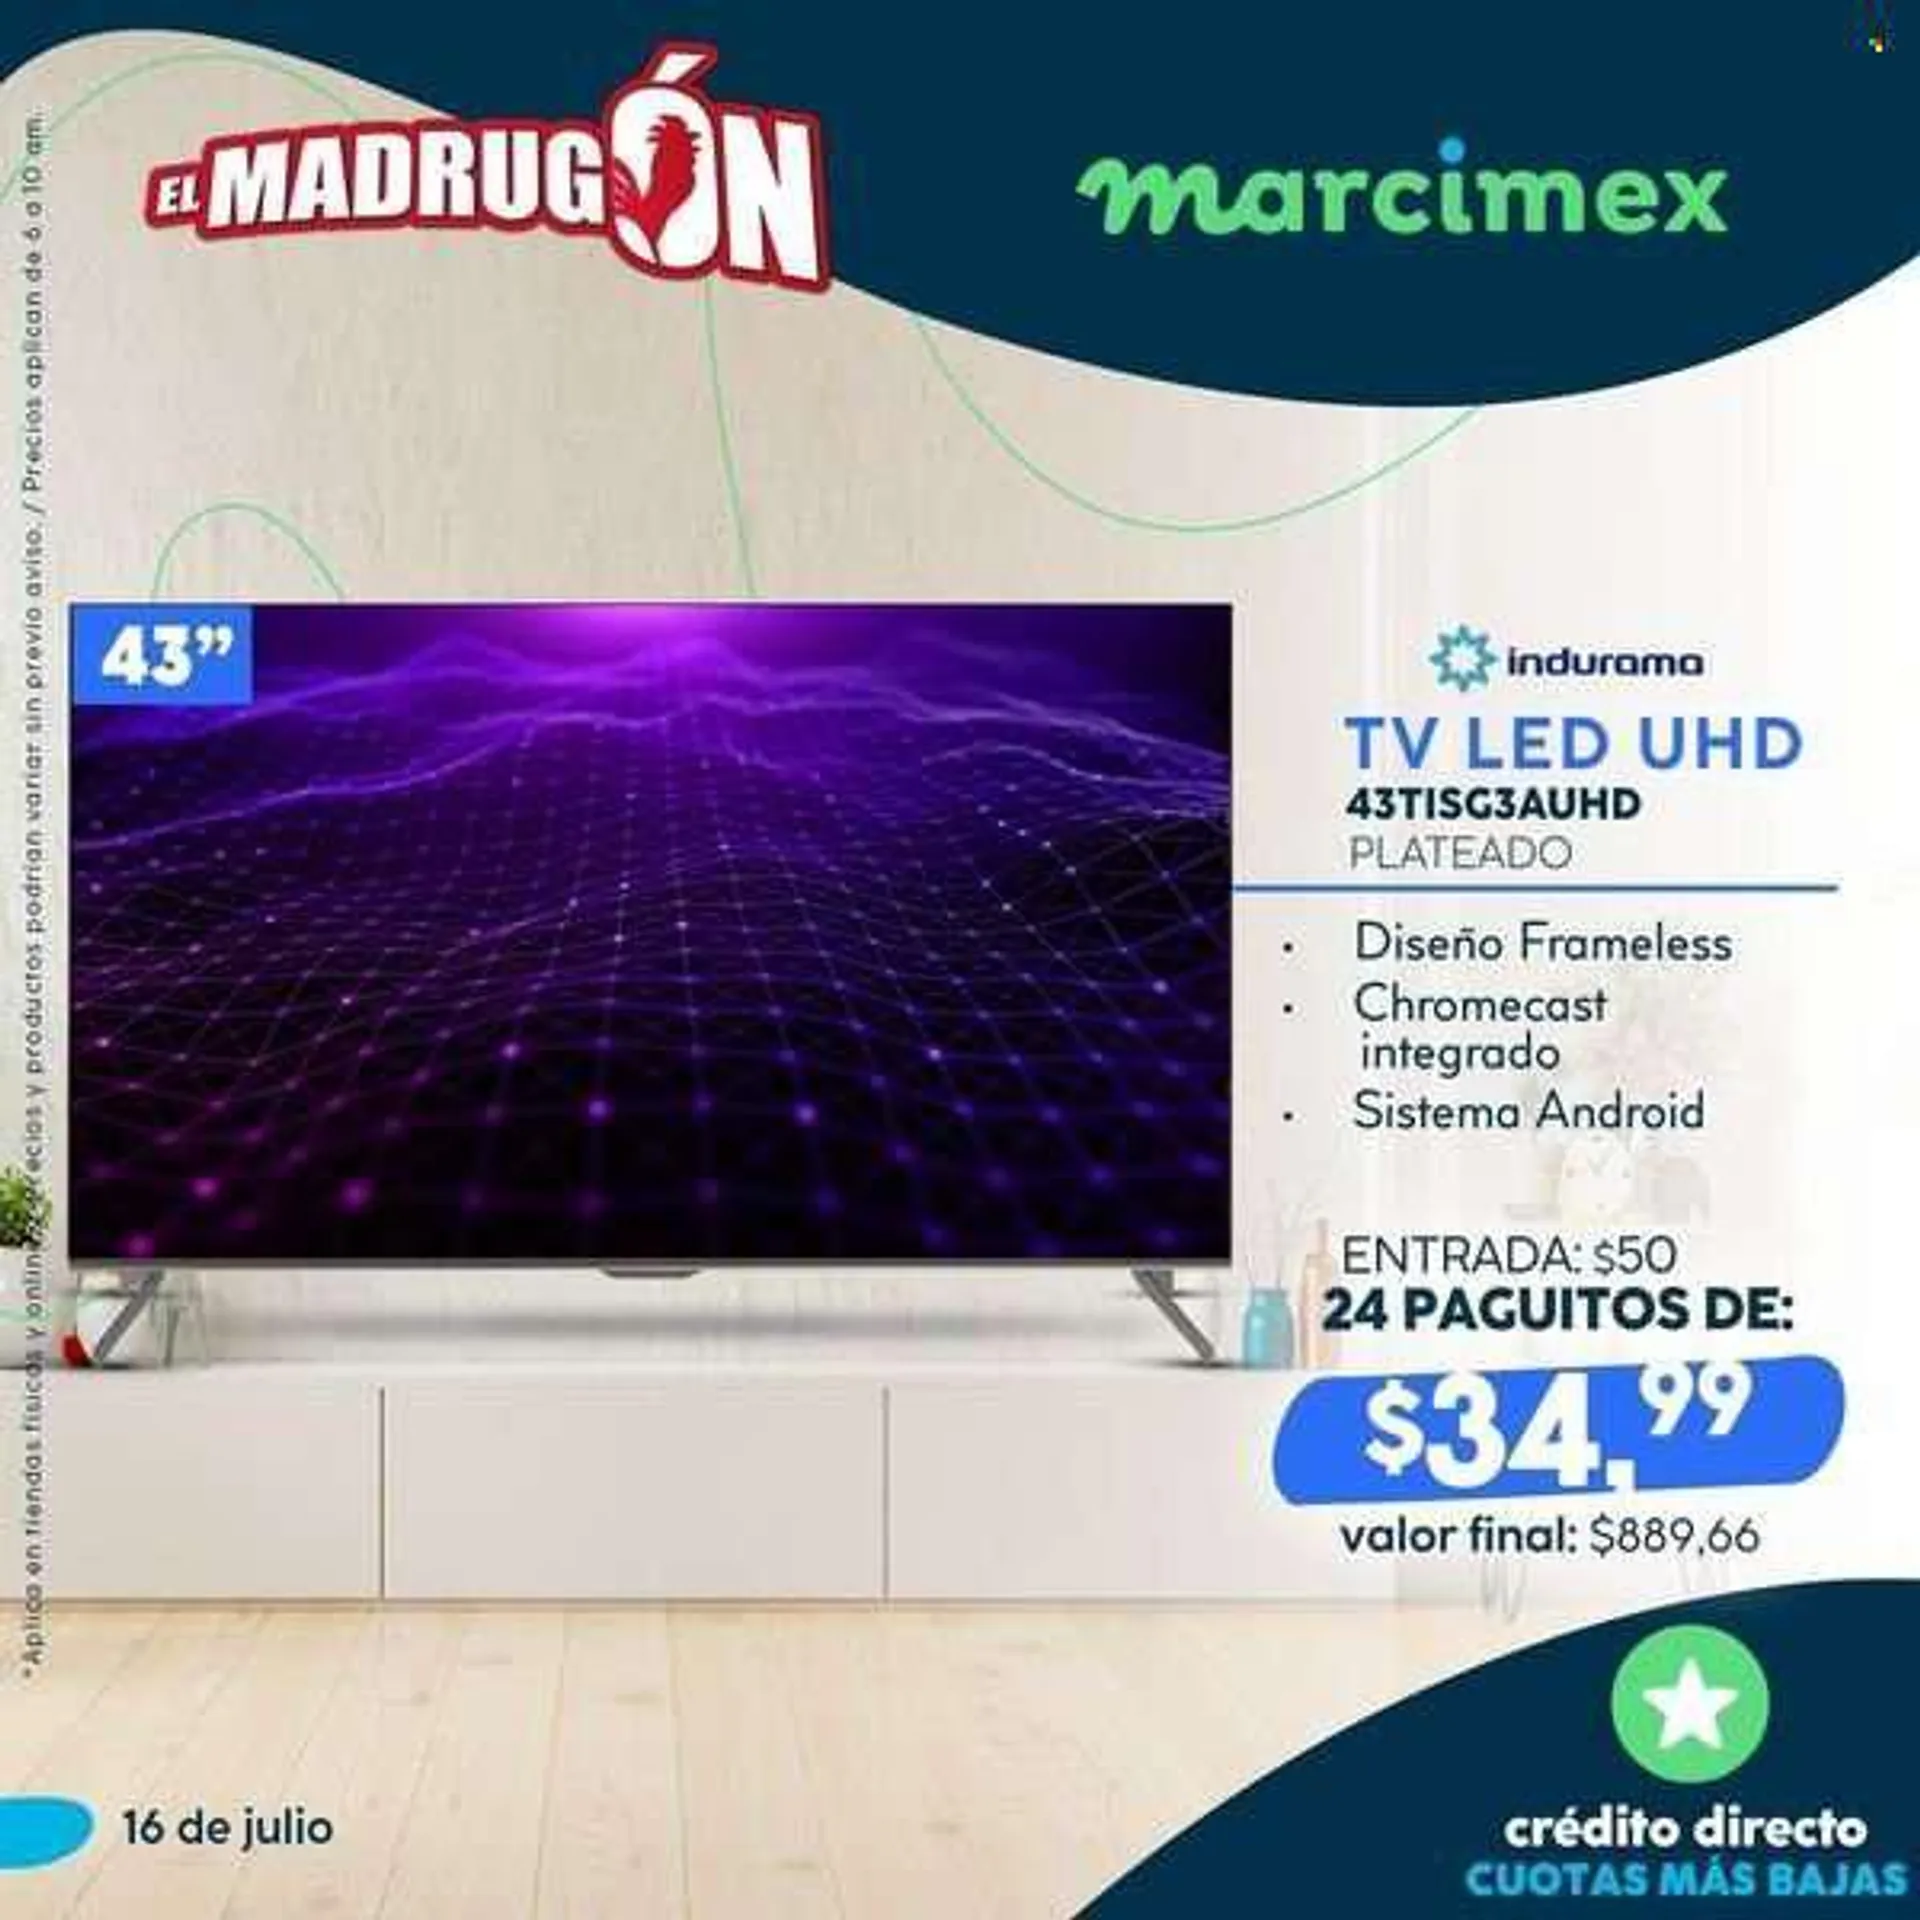 Folleto actual Marcimex - Ventas - televisor LED, televisor, Chromecast. Página 3.